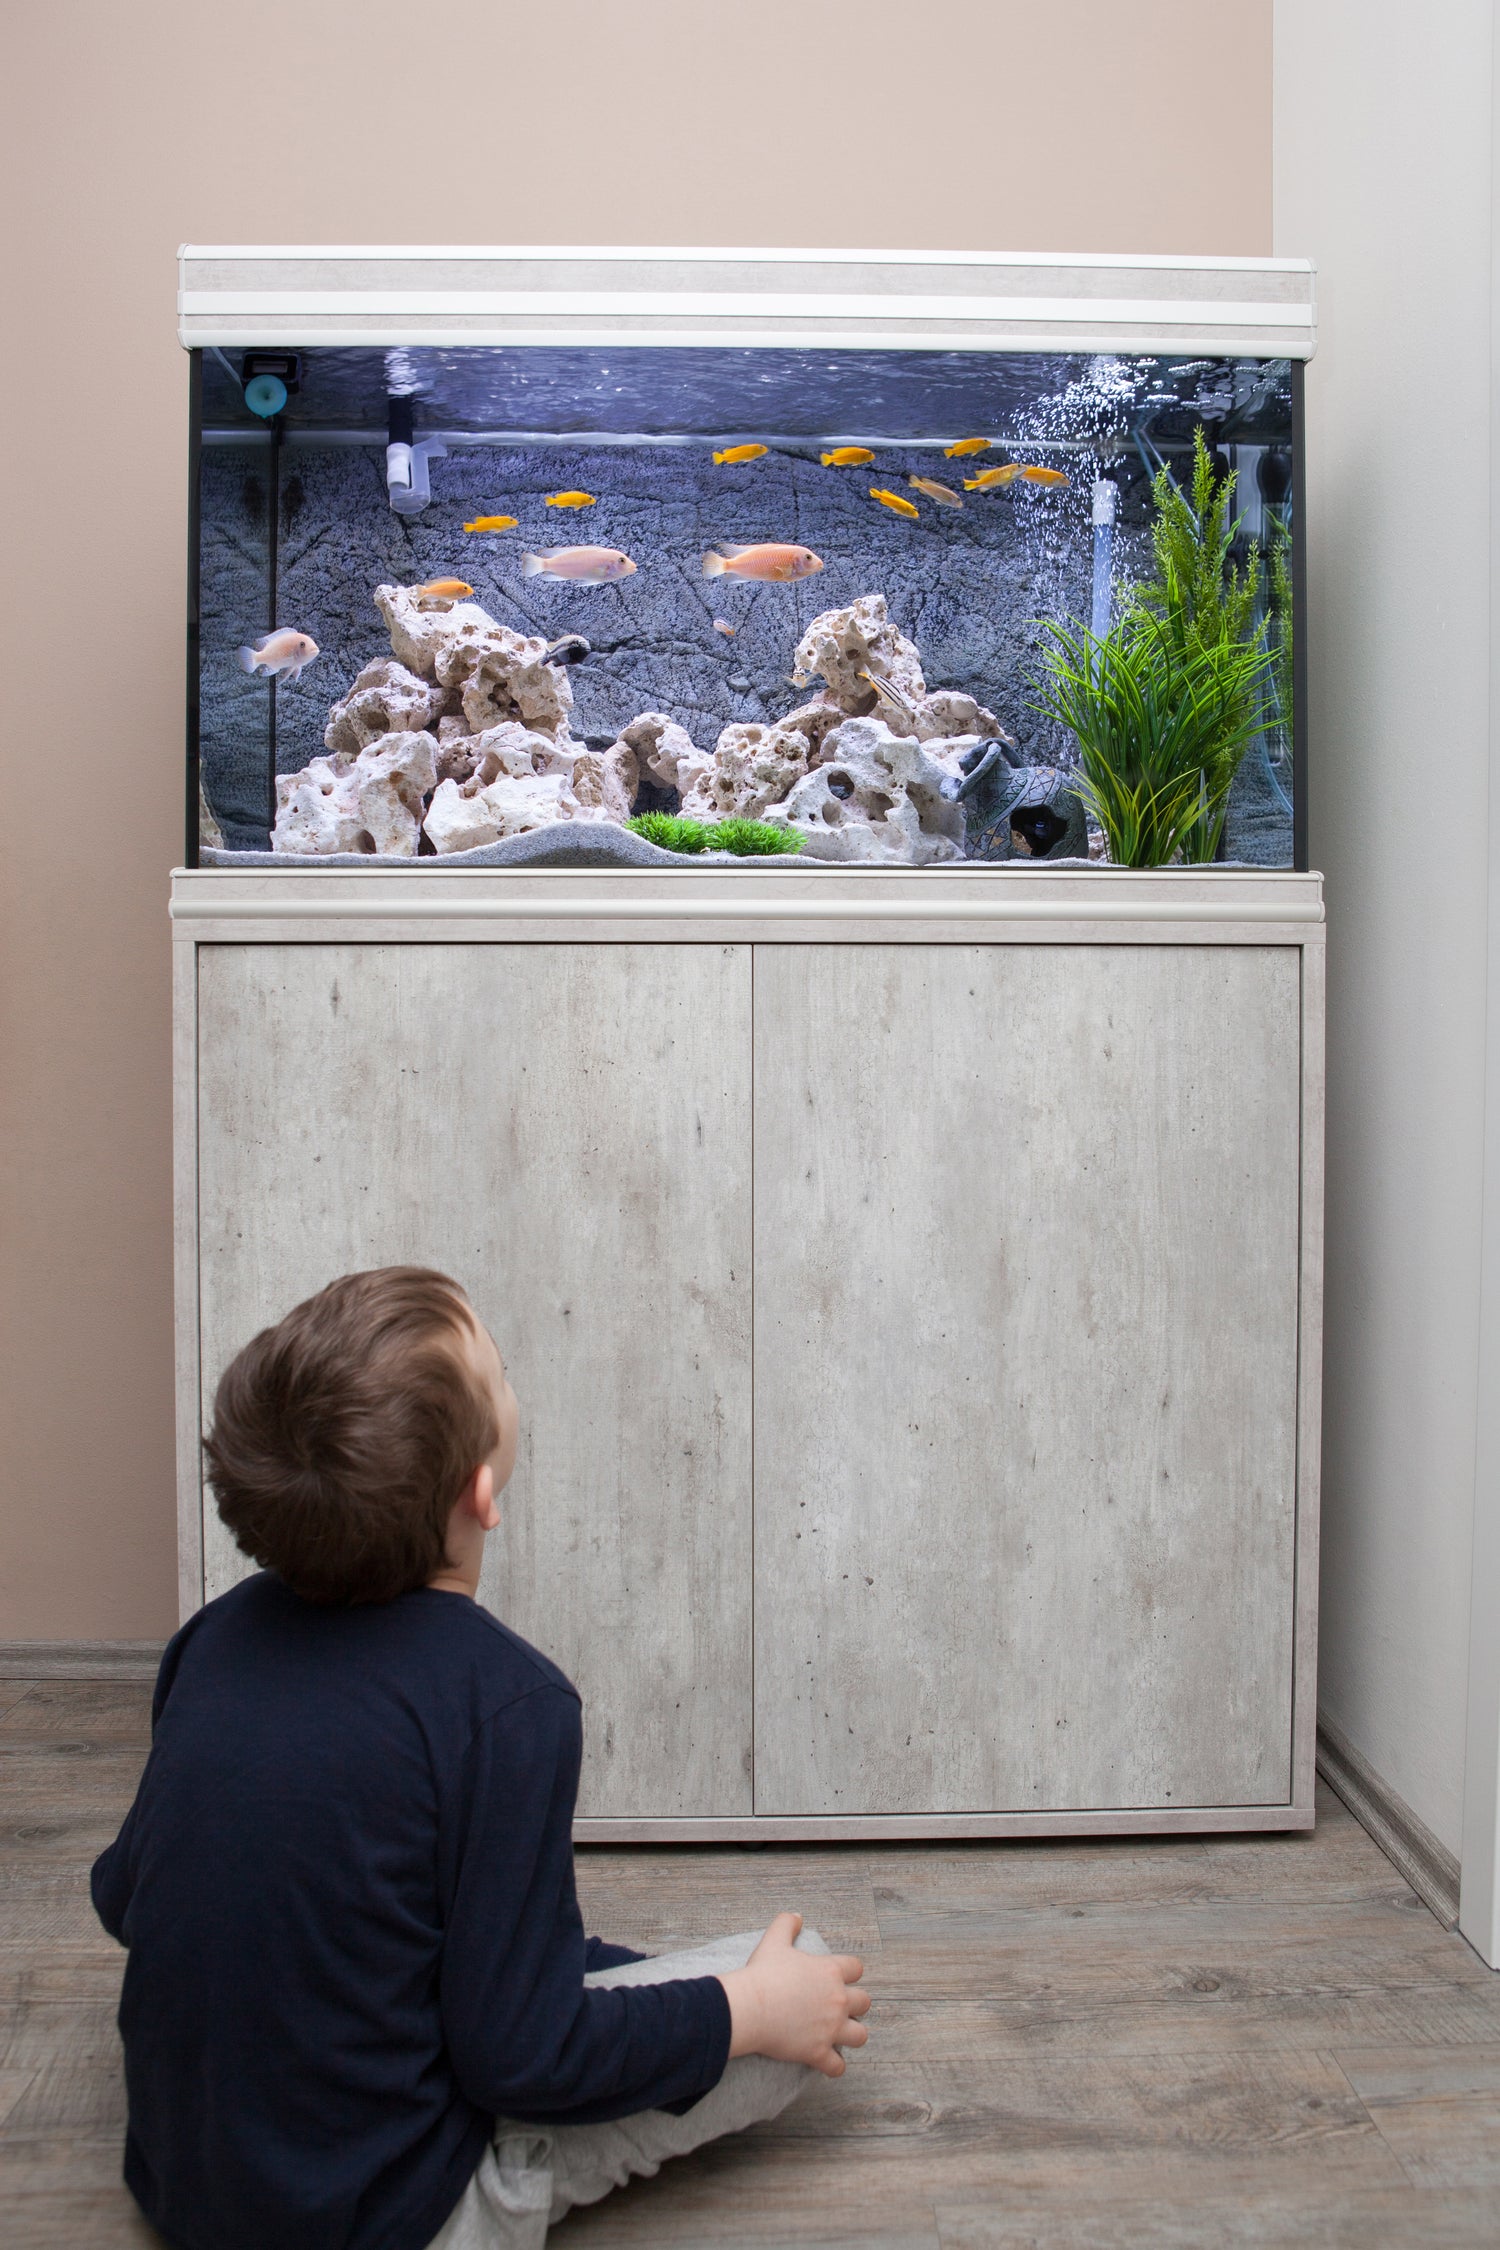 Dreng kigger på akvarie med fisk fra petpal